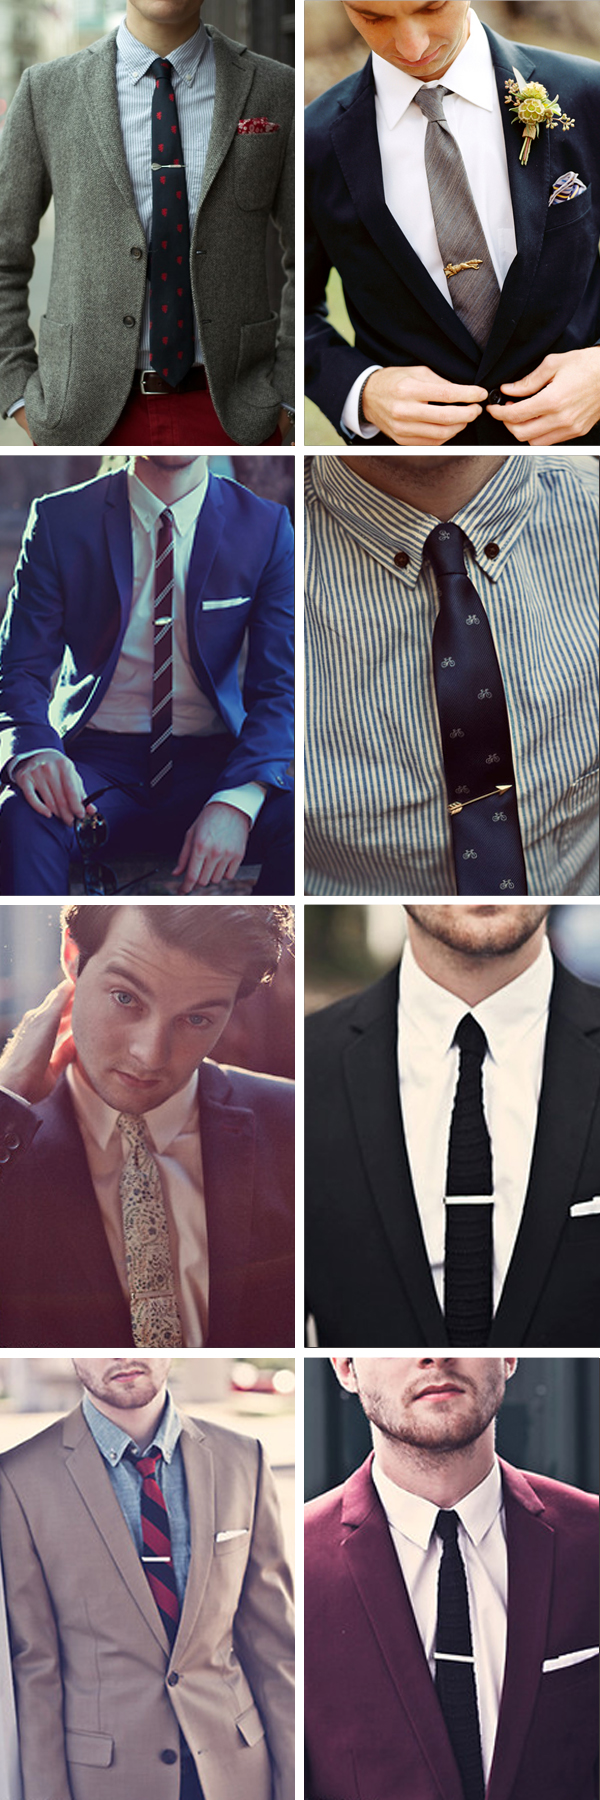 mens wedding attire ideas - vintage tie pin